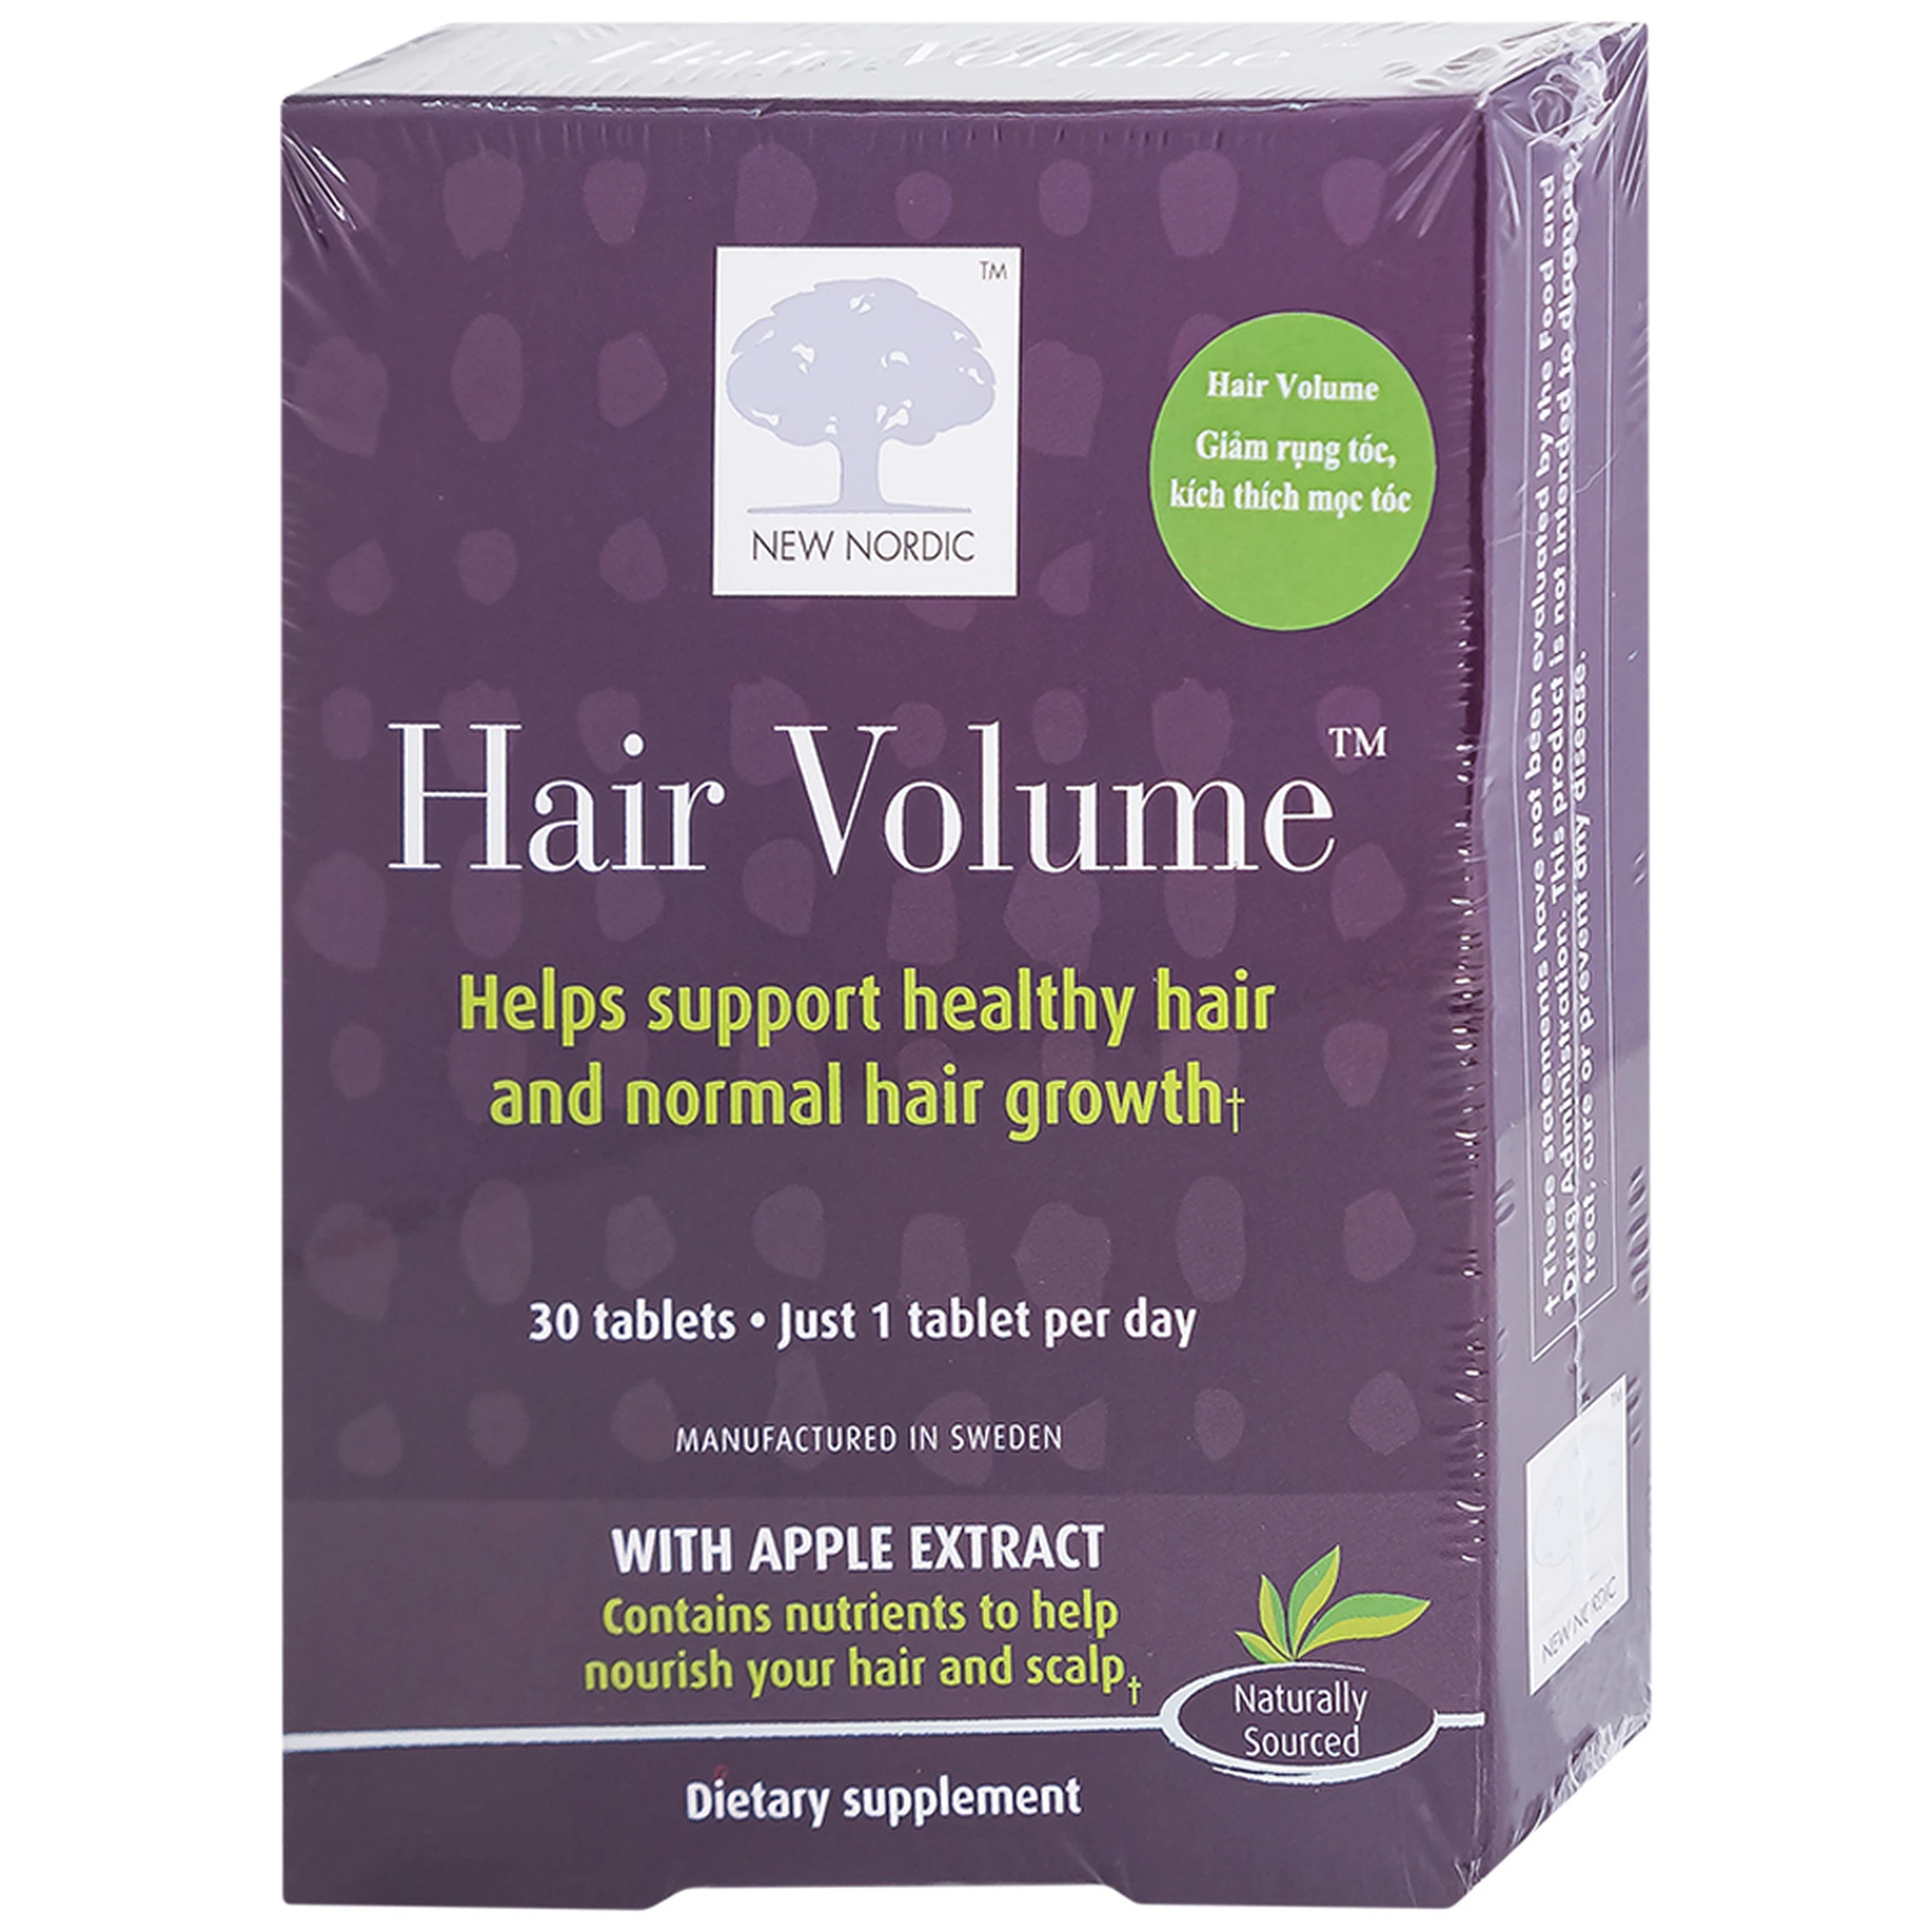 Viên uống Hair Volume New Nordic giúp tóc chắc khỏe, đẹp tóc, hạn chế rụng tóc (30 viên)